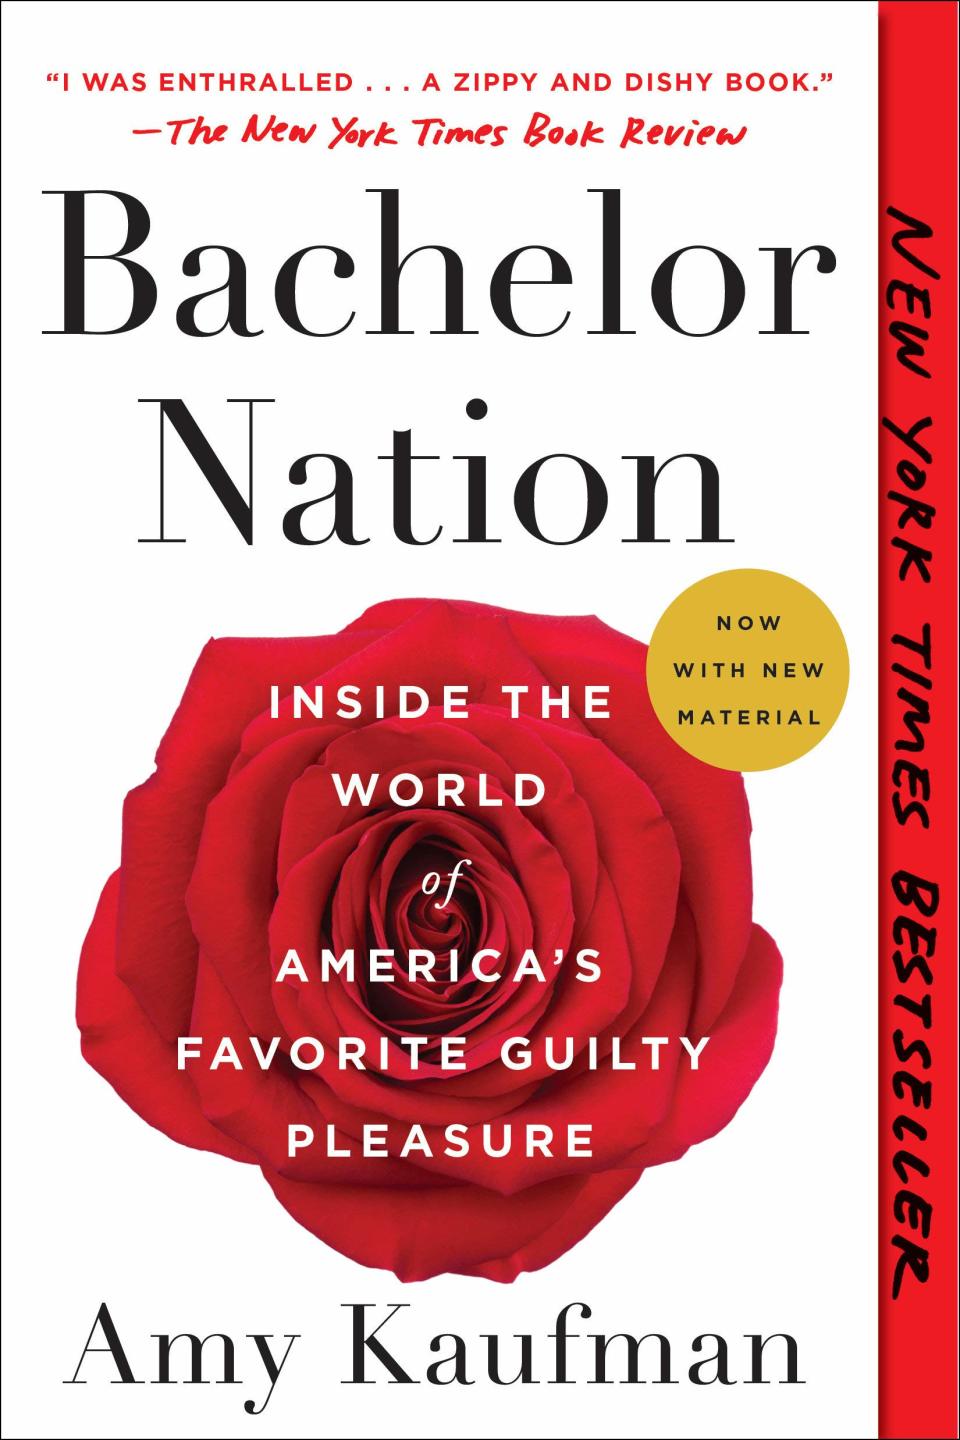 "Bachelor Nation" by Amy Kaufman